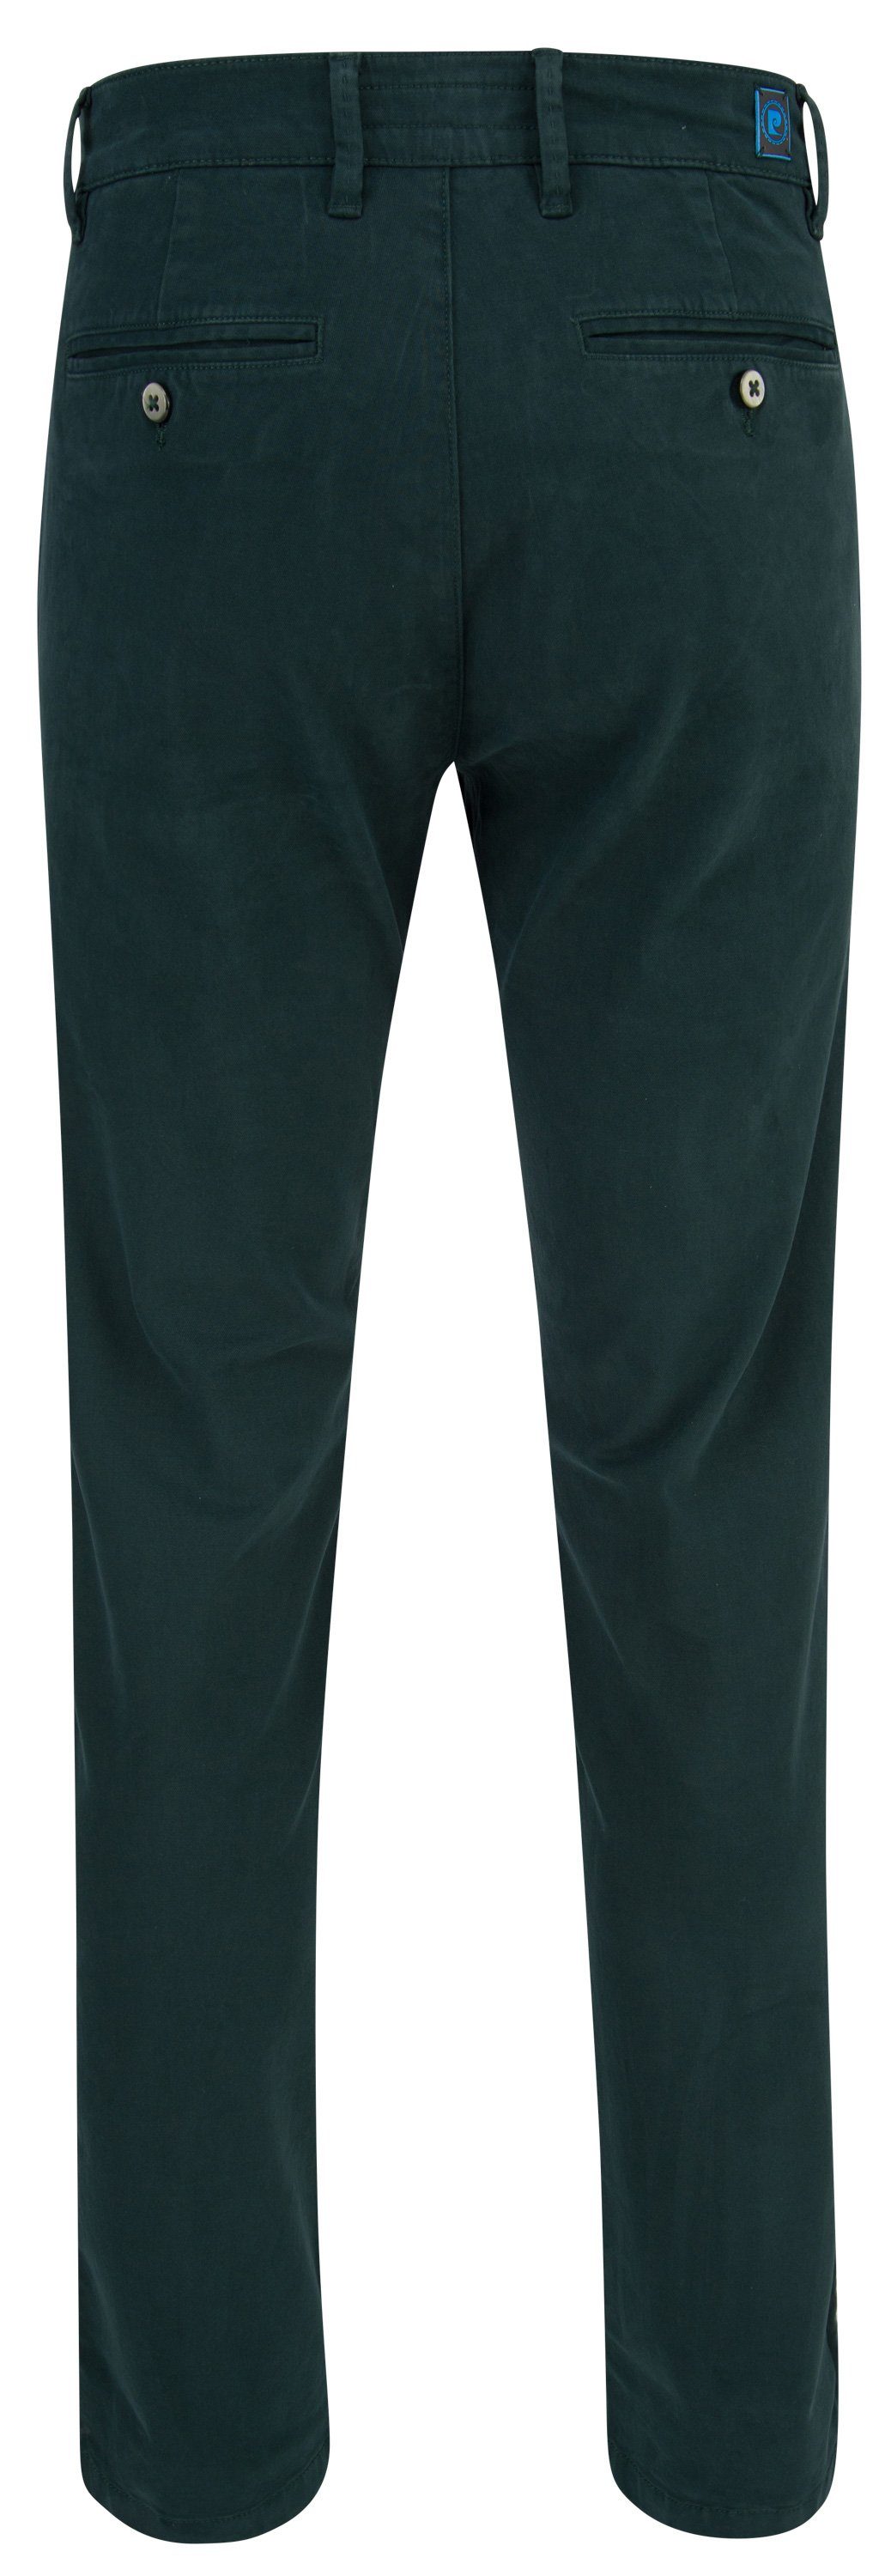 Pierre Cardin FUTUREFLEX green CARDIN 33757 fir LYON PIERRE 5-Pocket-Jeans 2233.75